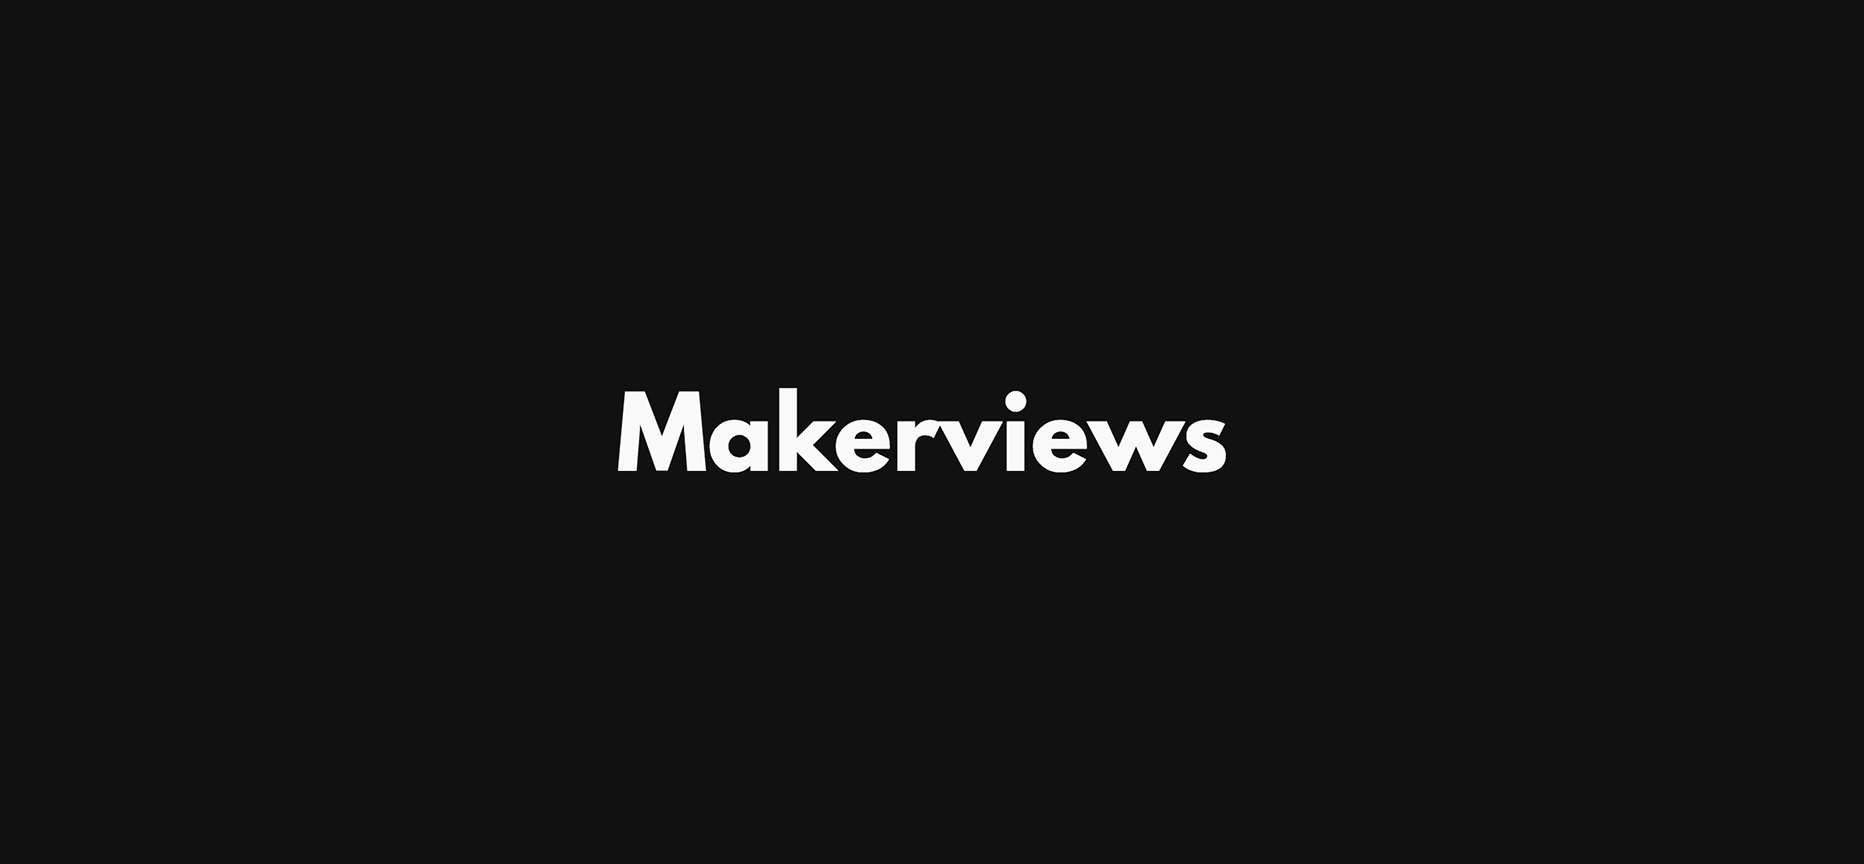 Makerviews News